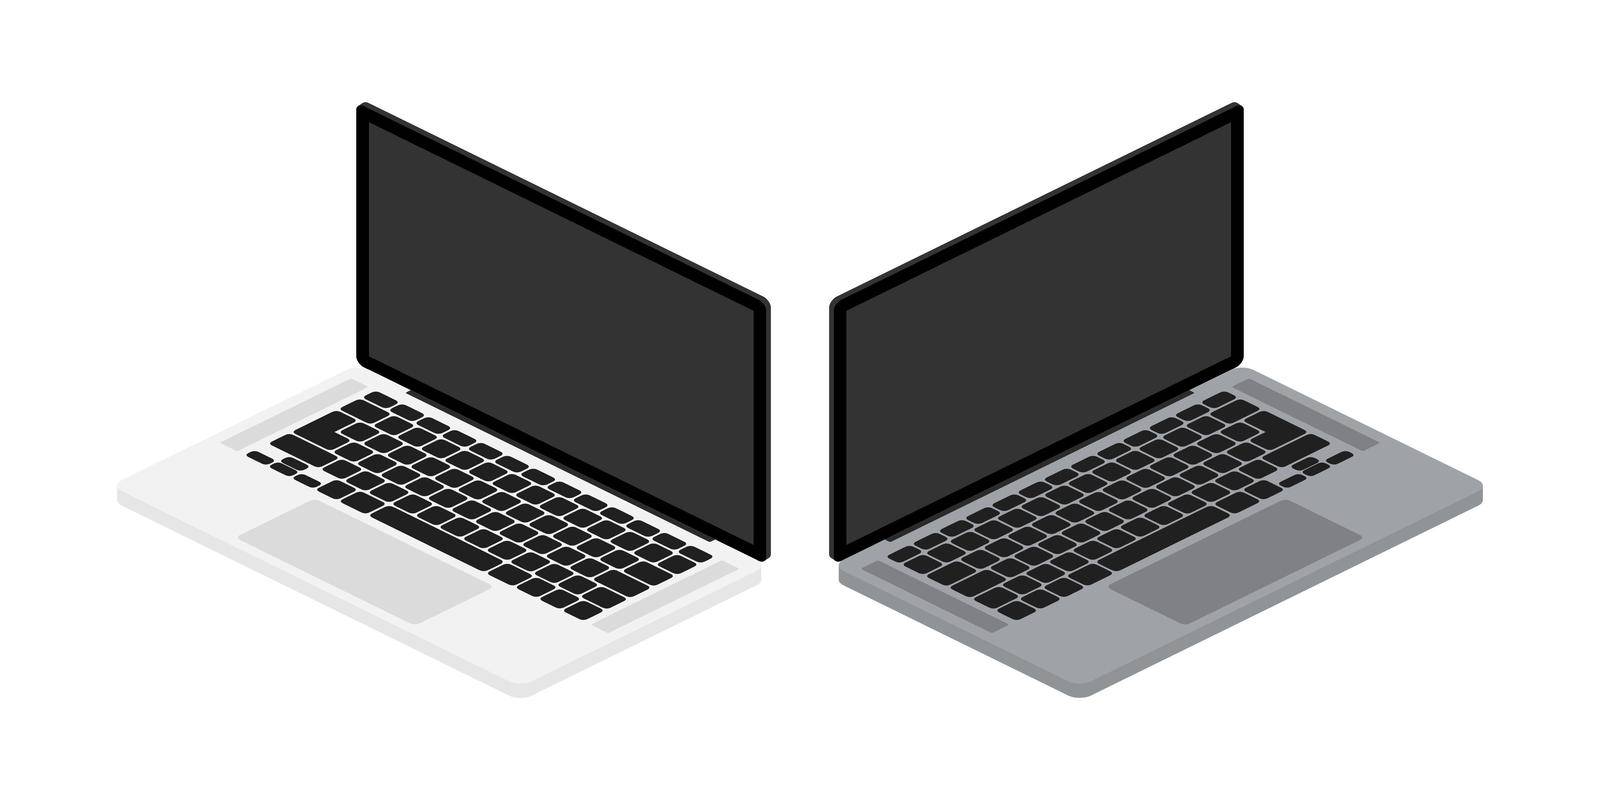 Flat mock up laptop for web site design. Awesome mock up laptop, great design for any purposes